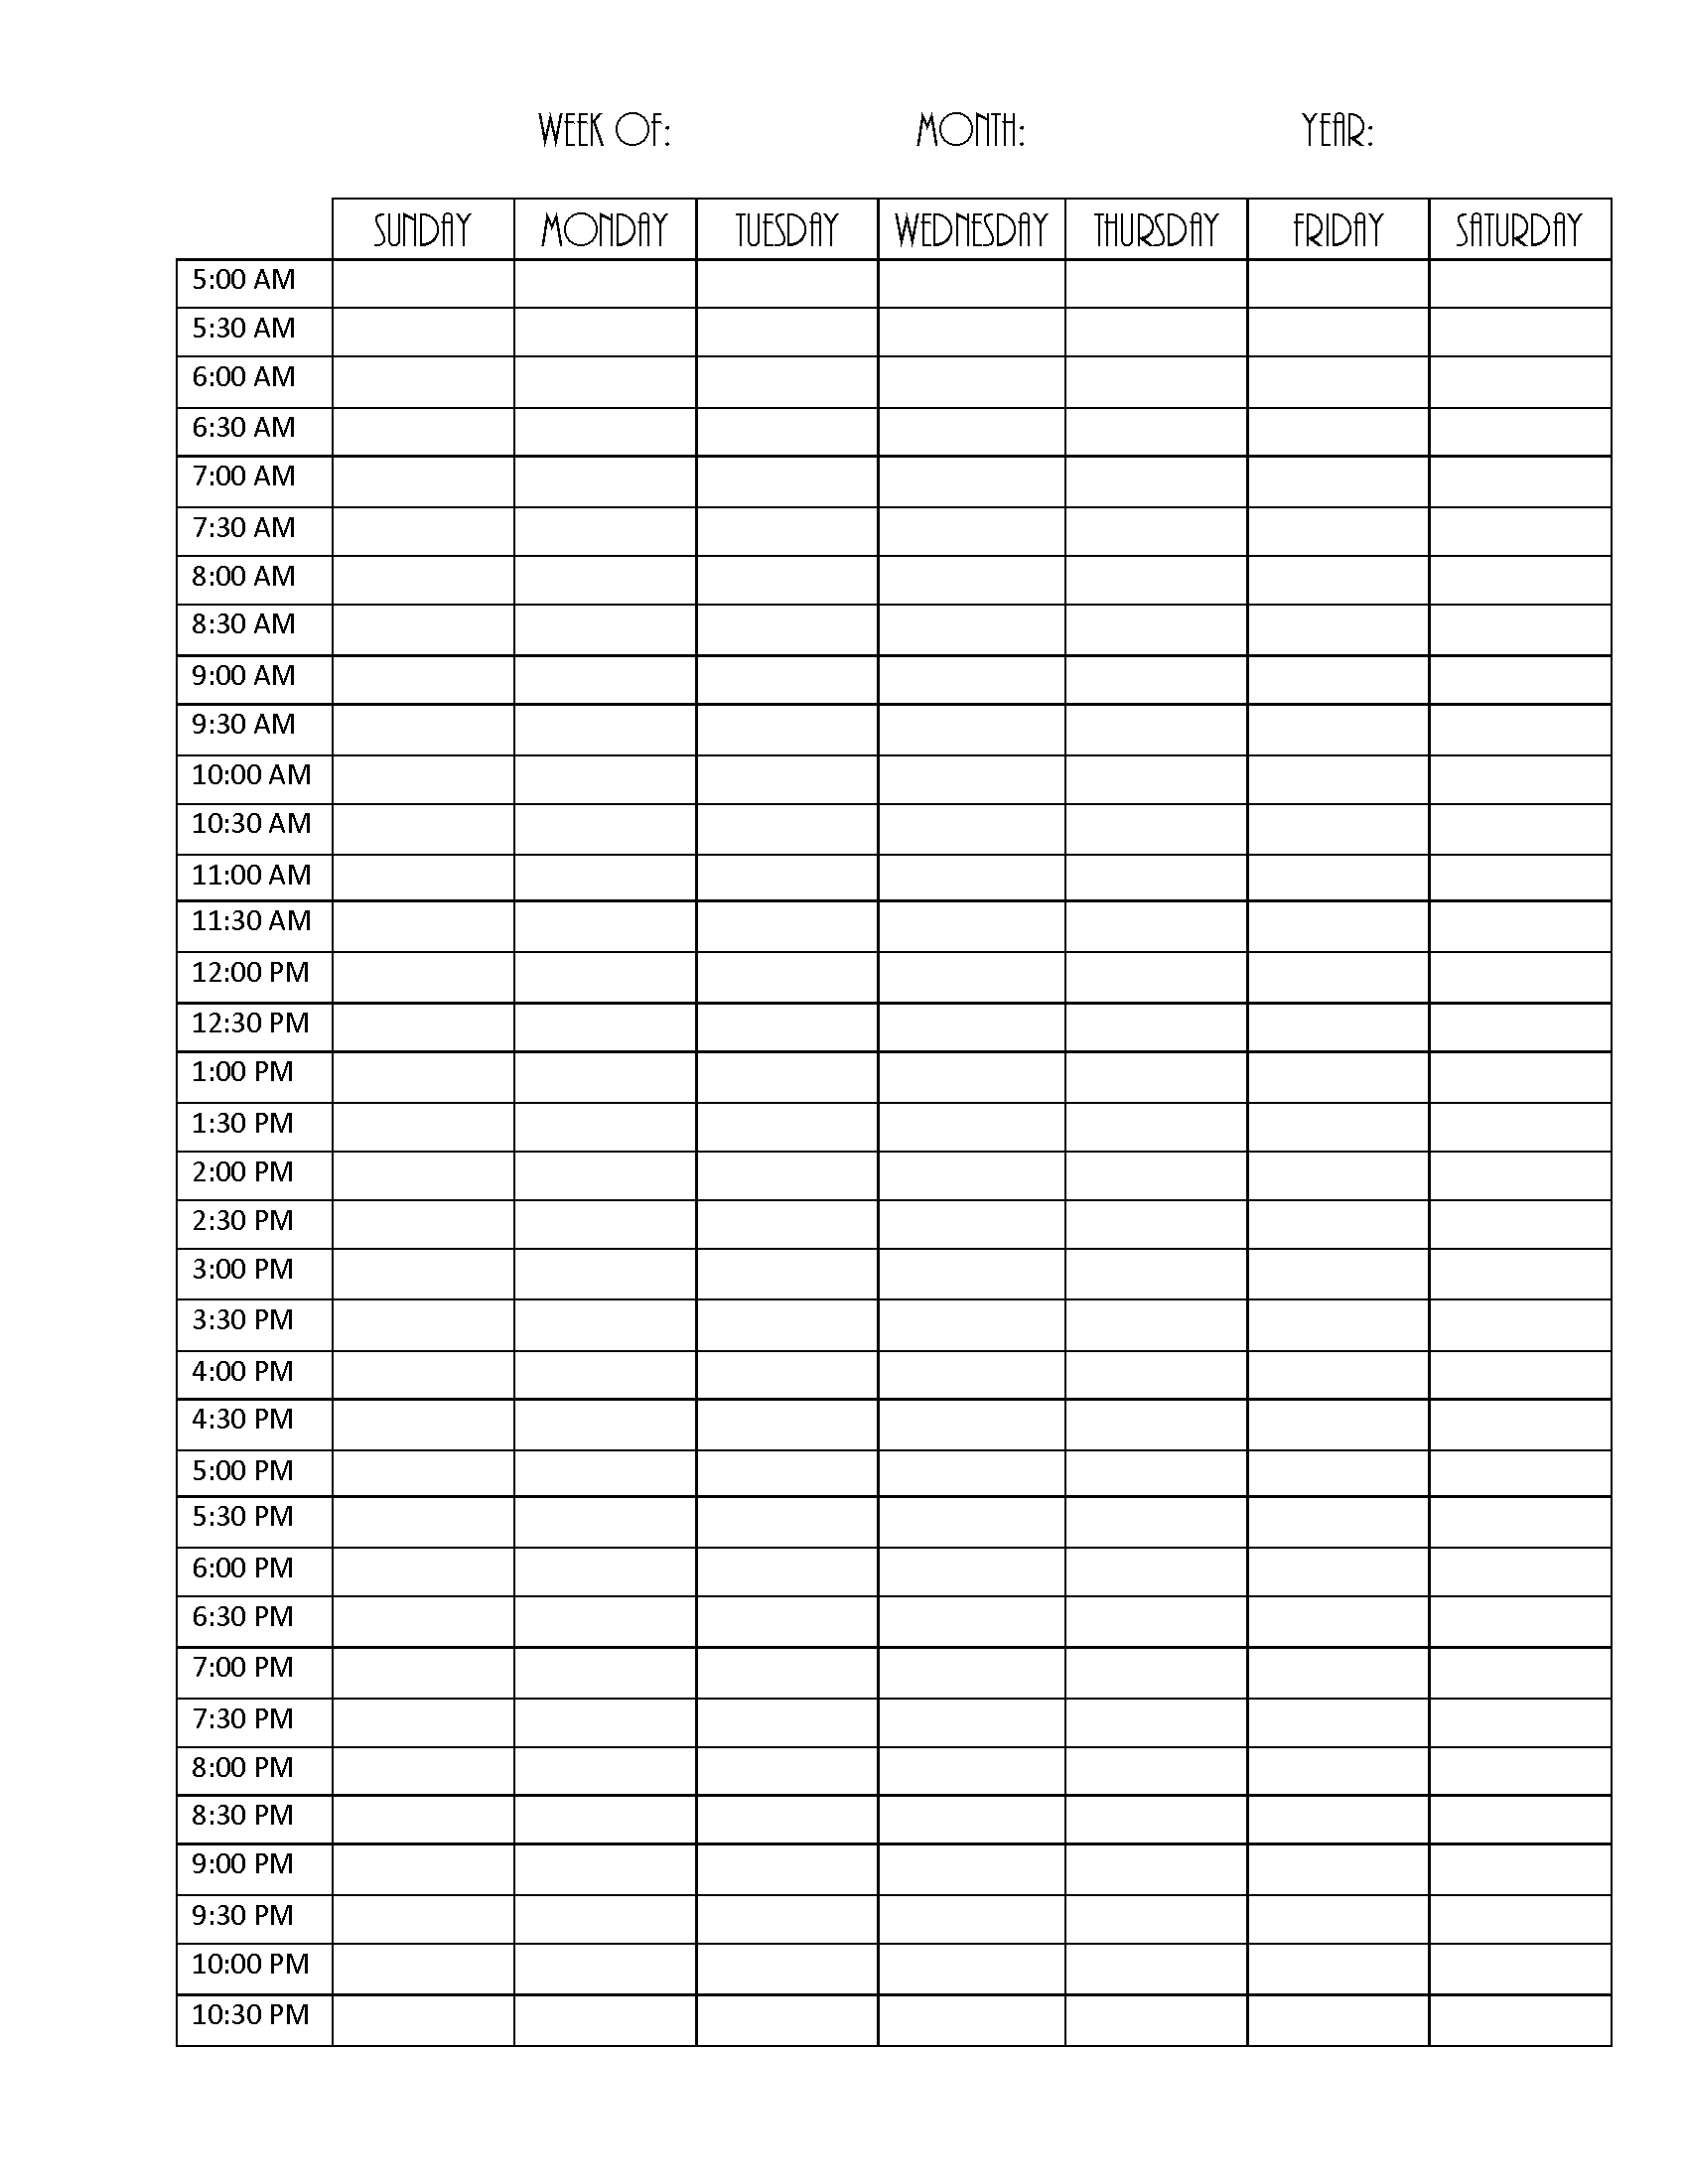 Blank Weekly Calendar Editable PDF, Word or Image